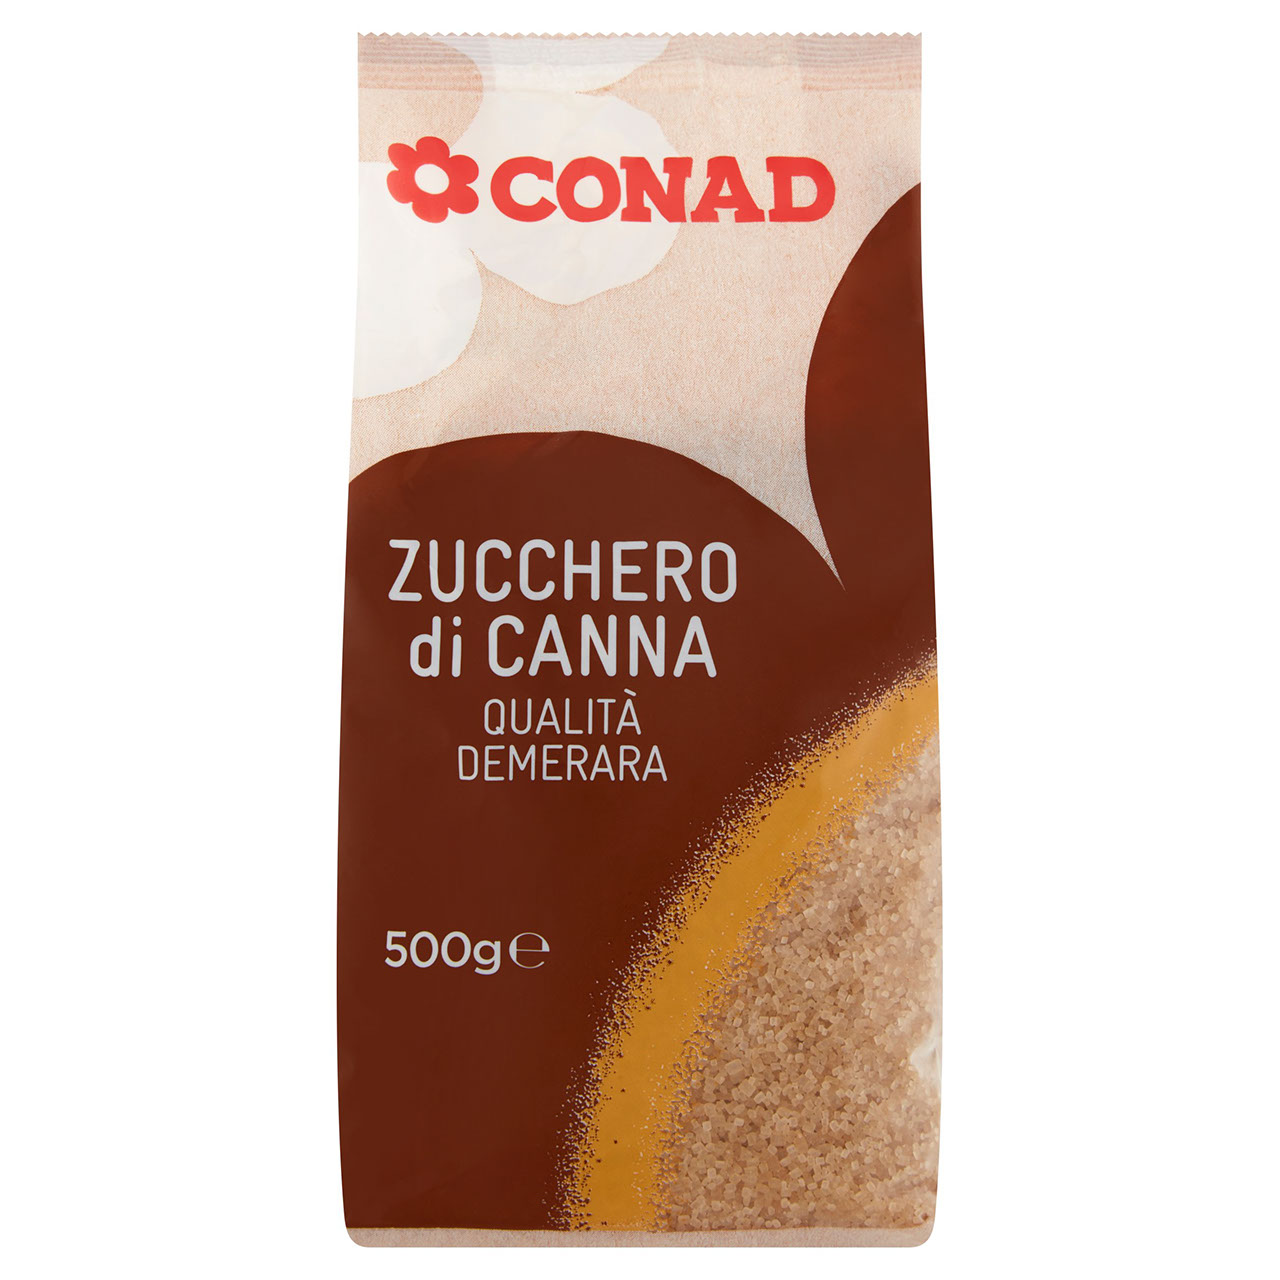 Esotico Zucchero di Canna Conad in vendita online